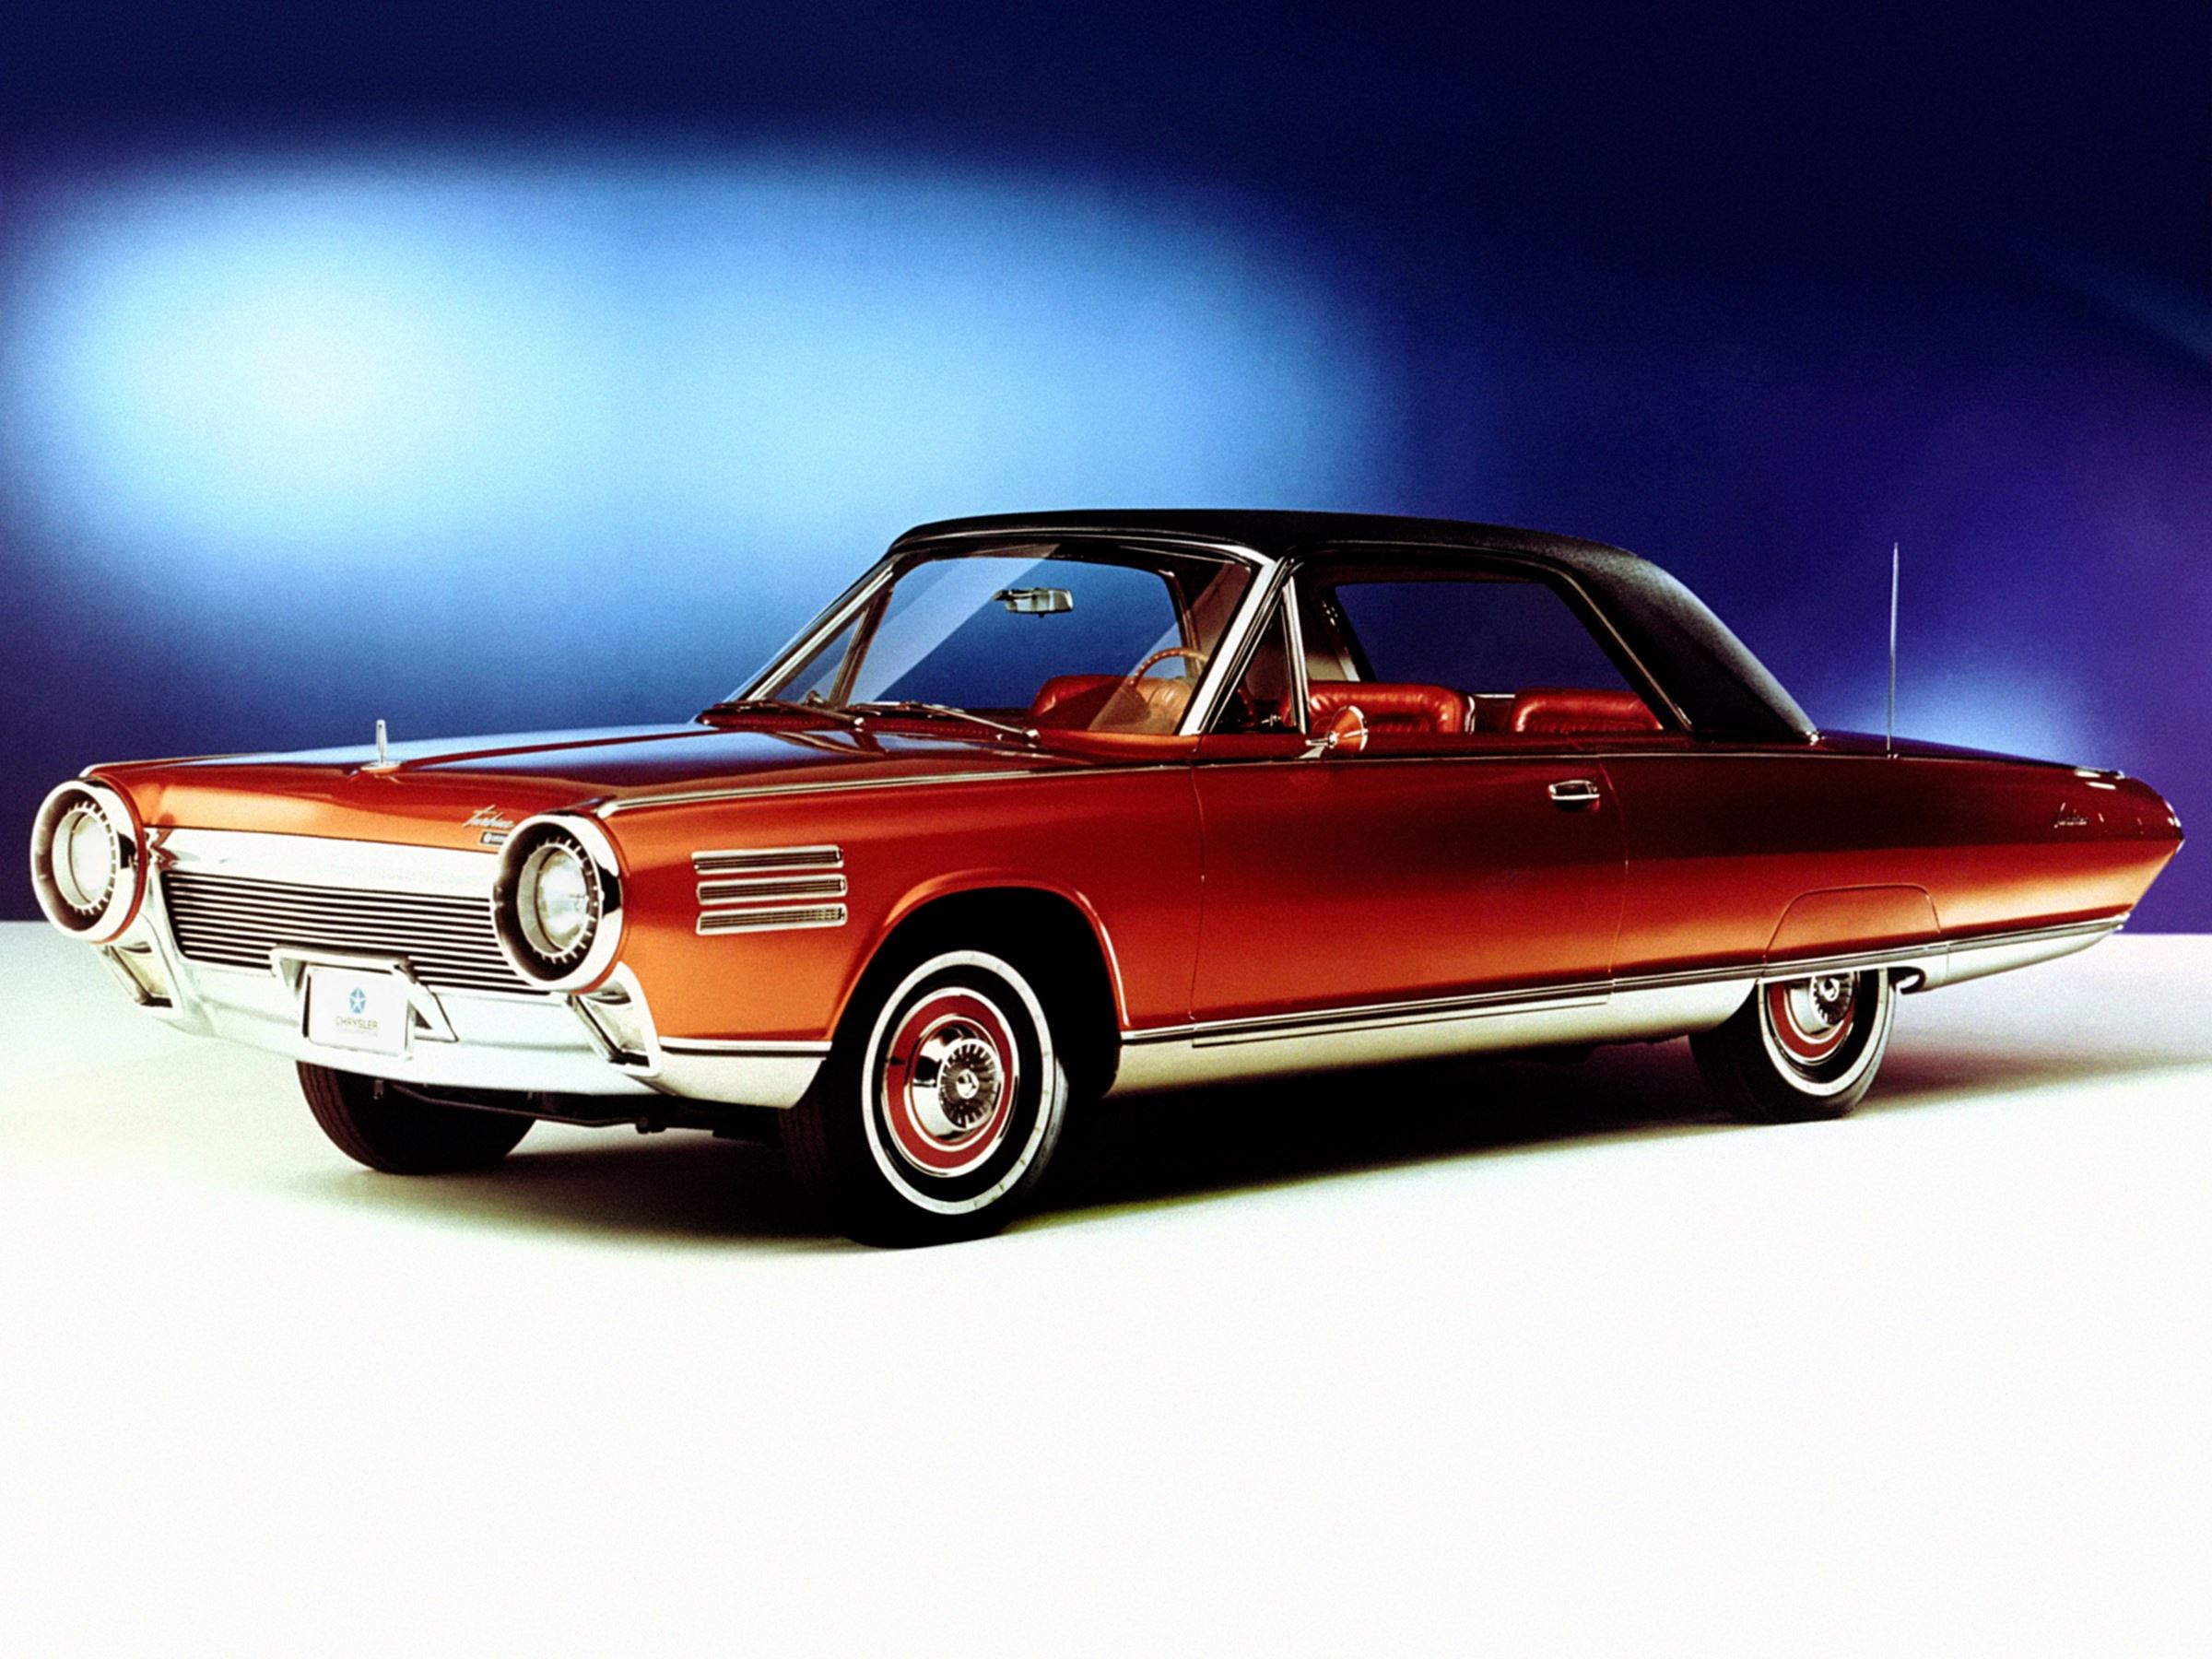 Oto najciekawsze modele w historii marki Chrysler